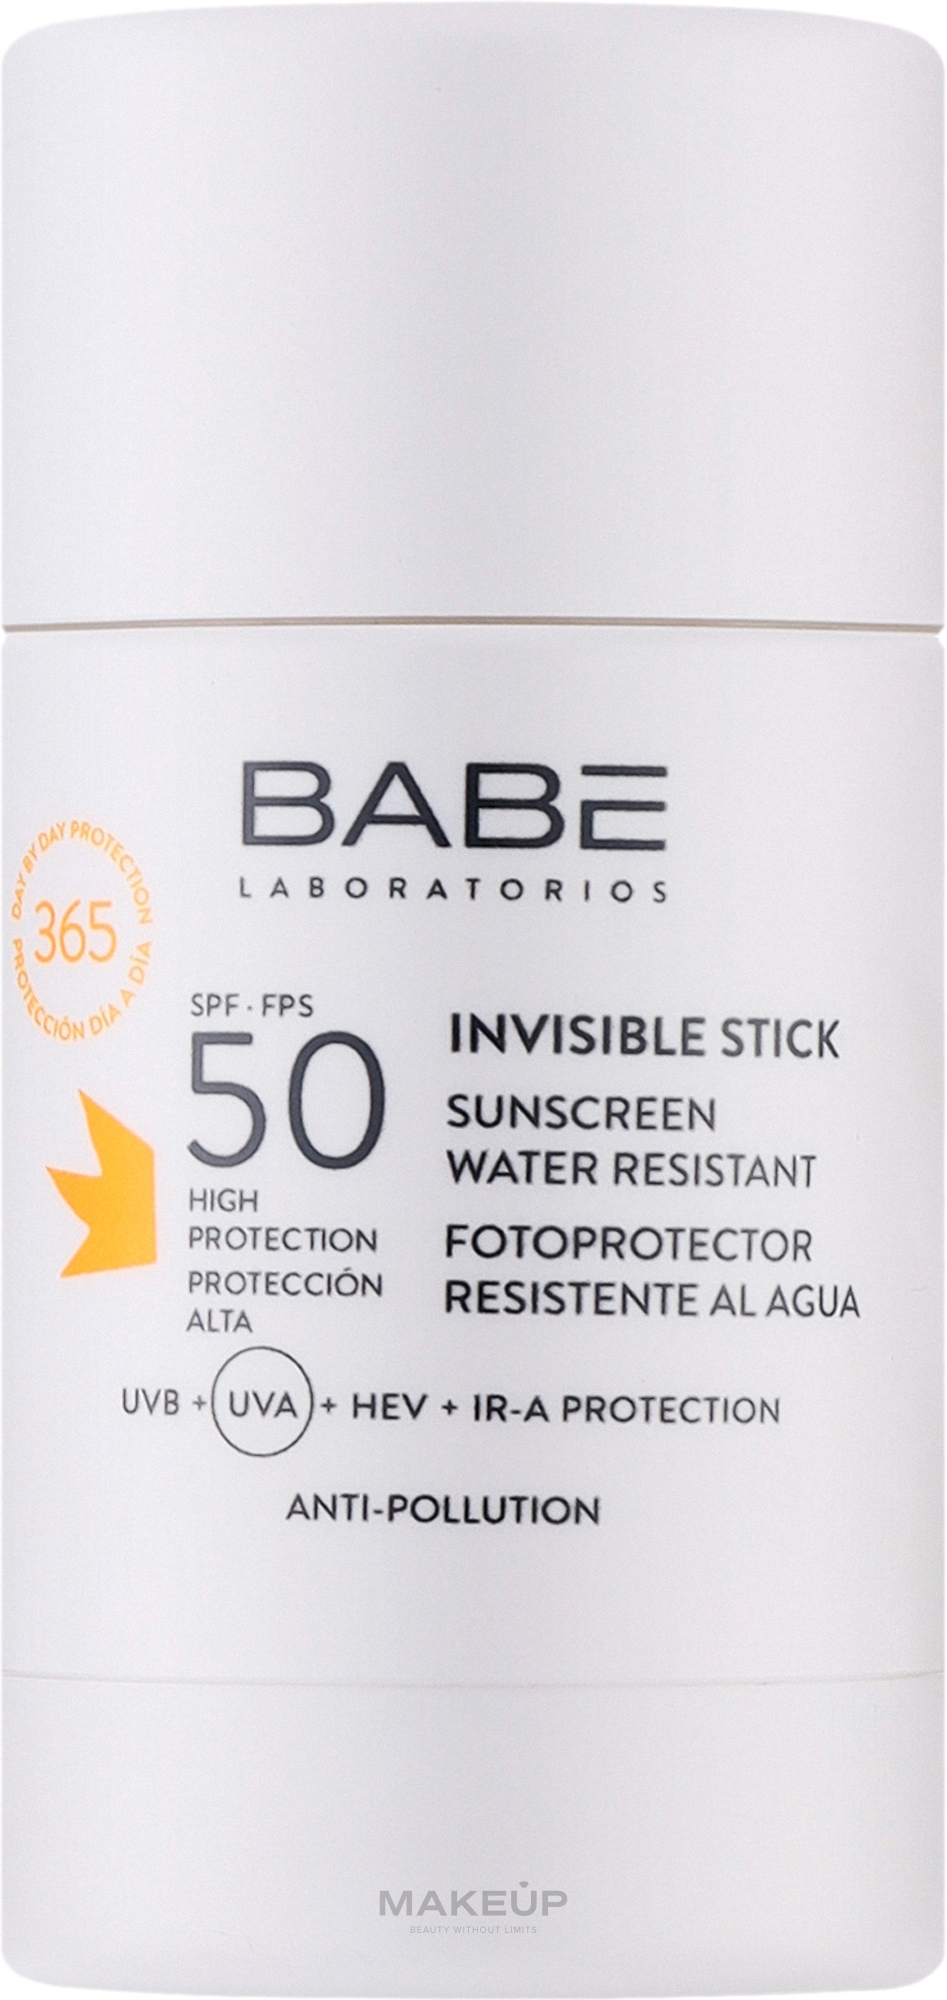 Сонцезахисний невидимий прозорий стік для обличчя і тіла SPF 50 - Babe Laboratorios Sun Protection — фото 30g